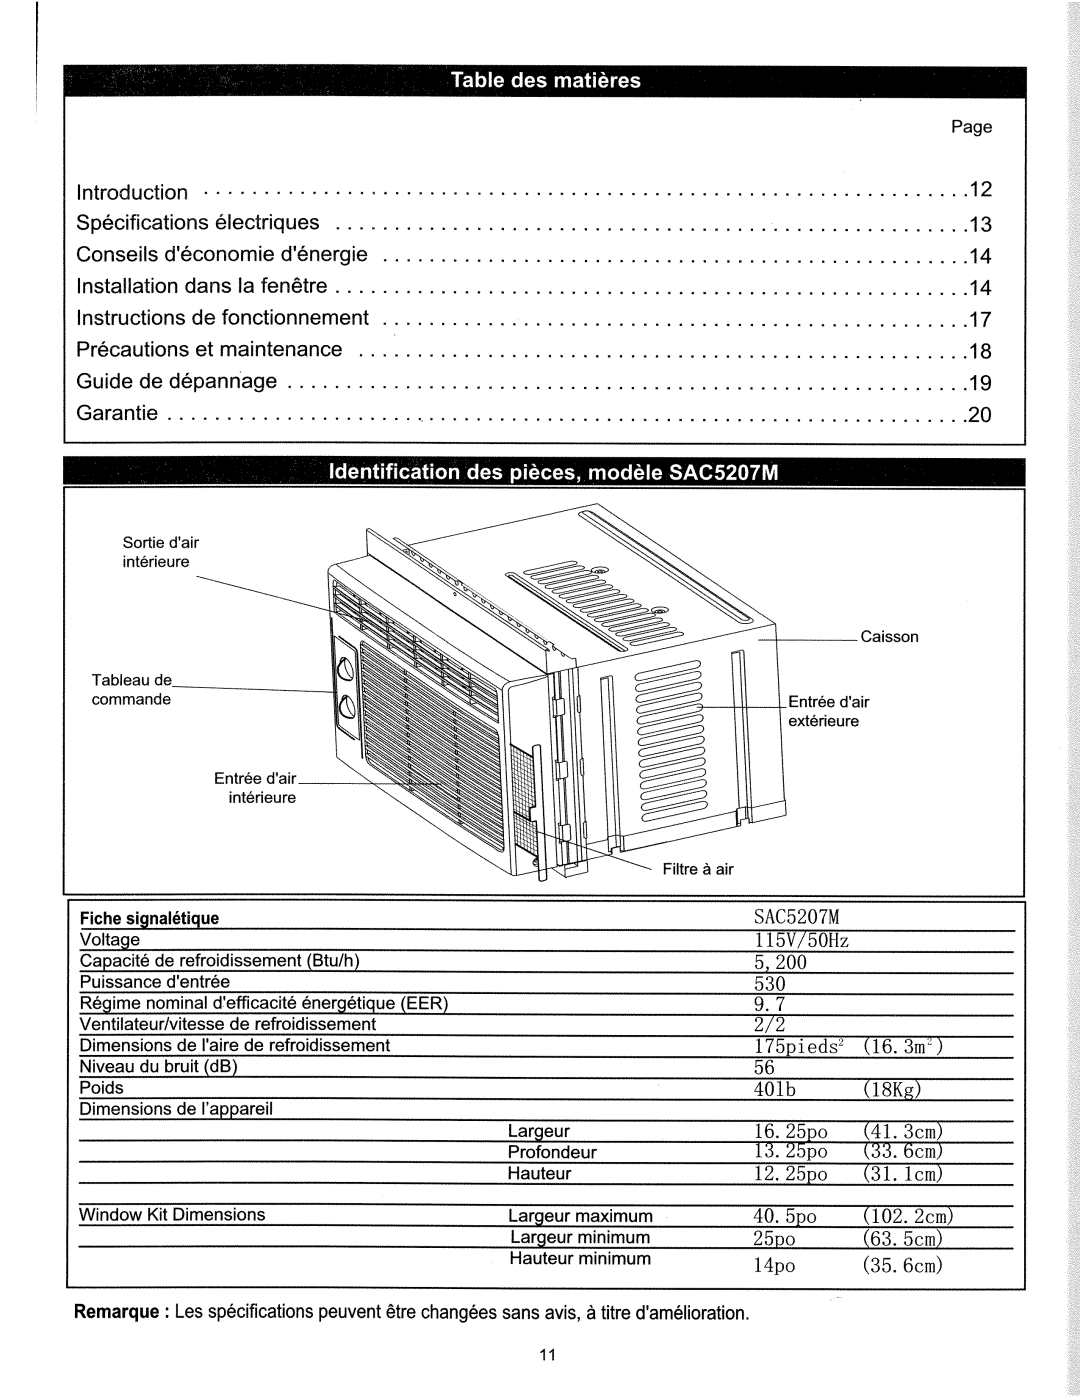 Danby SAC5207M manual 